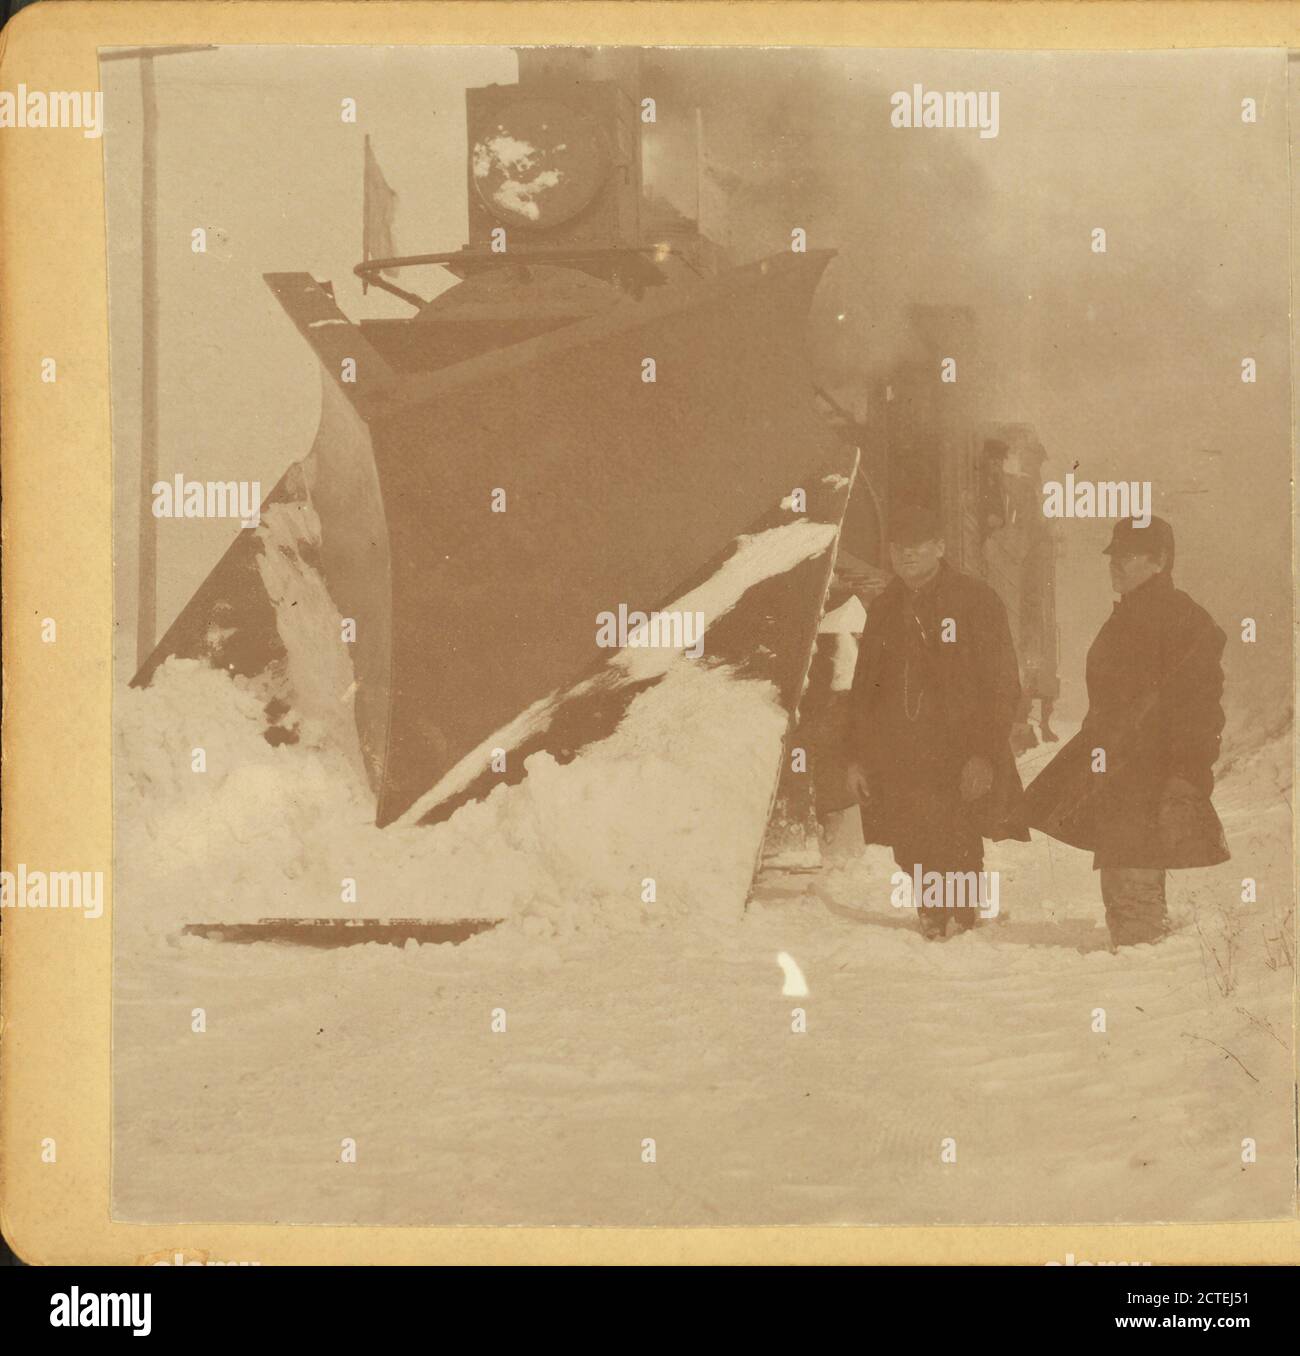 Lokomotive Schneepflug., Pennsylvania, amerika Ahnentafel Archiv Foto, USA faszinierende und seltene historische Bild. Stockfoto